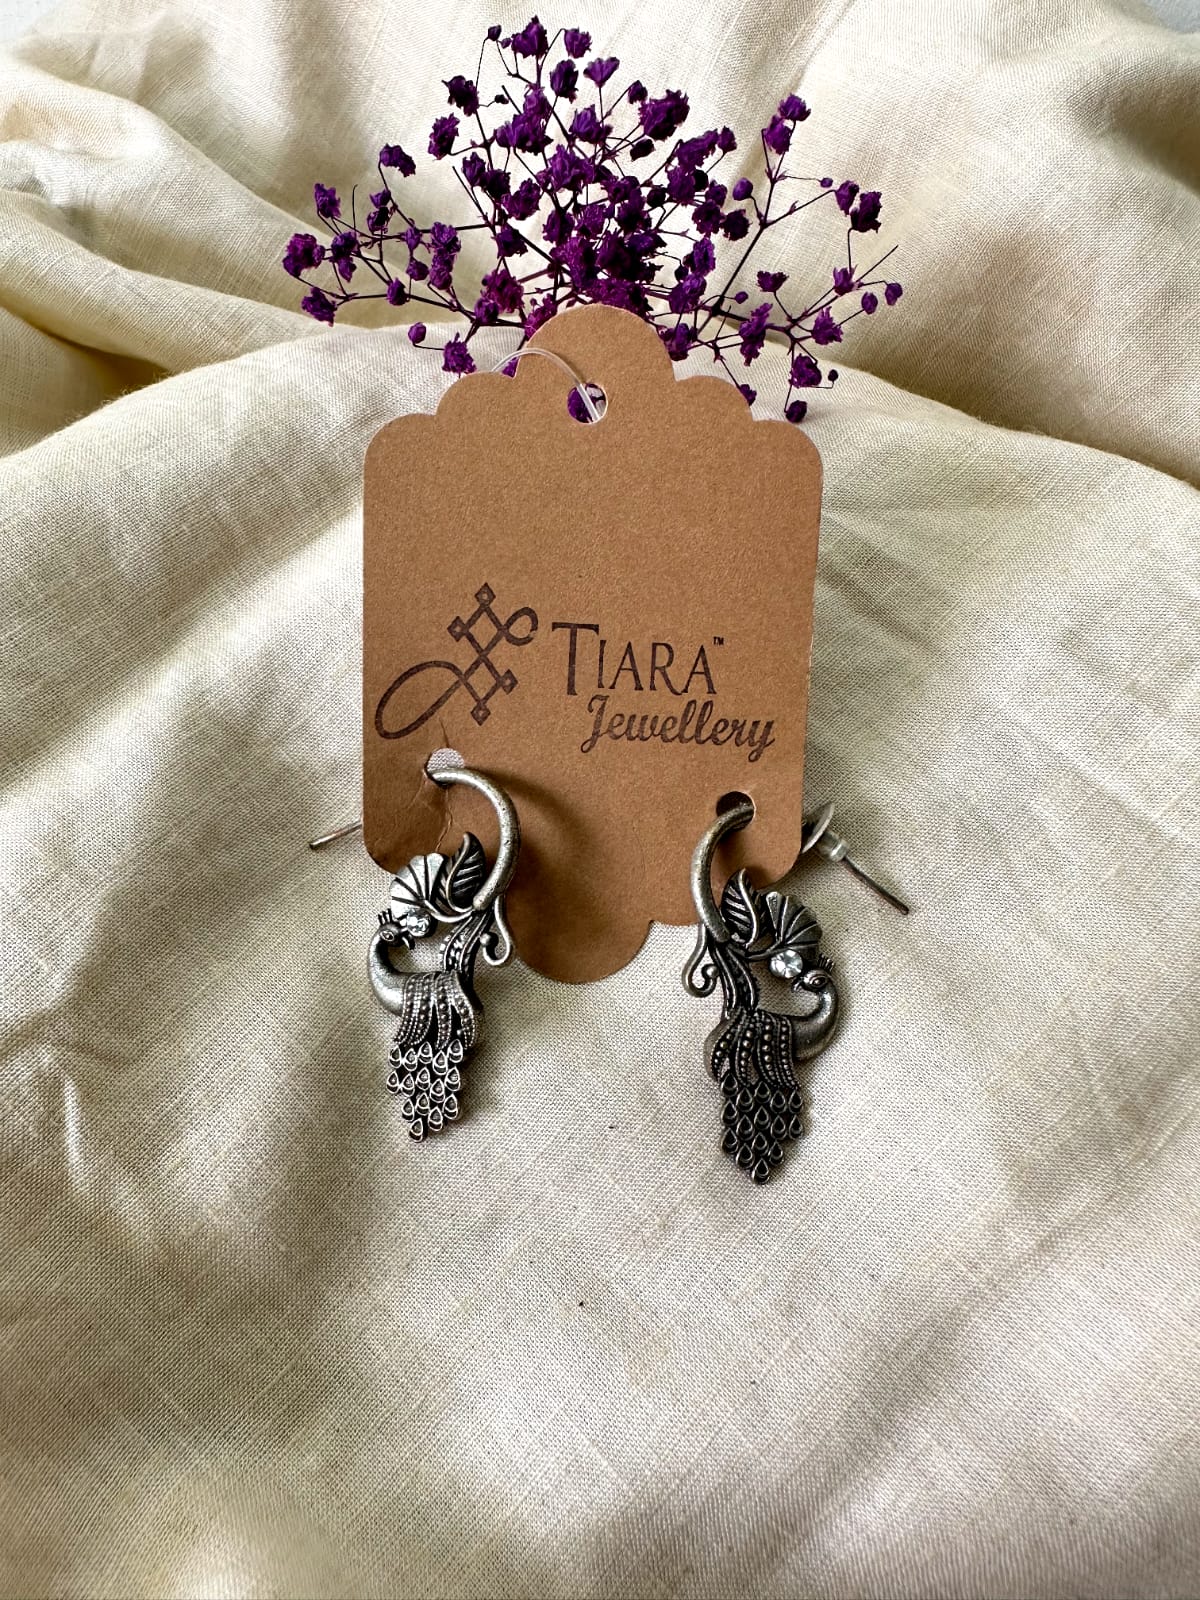 German Silver Peacock earrings in sale for women & Girls